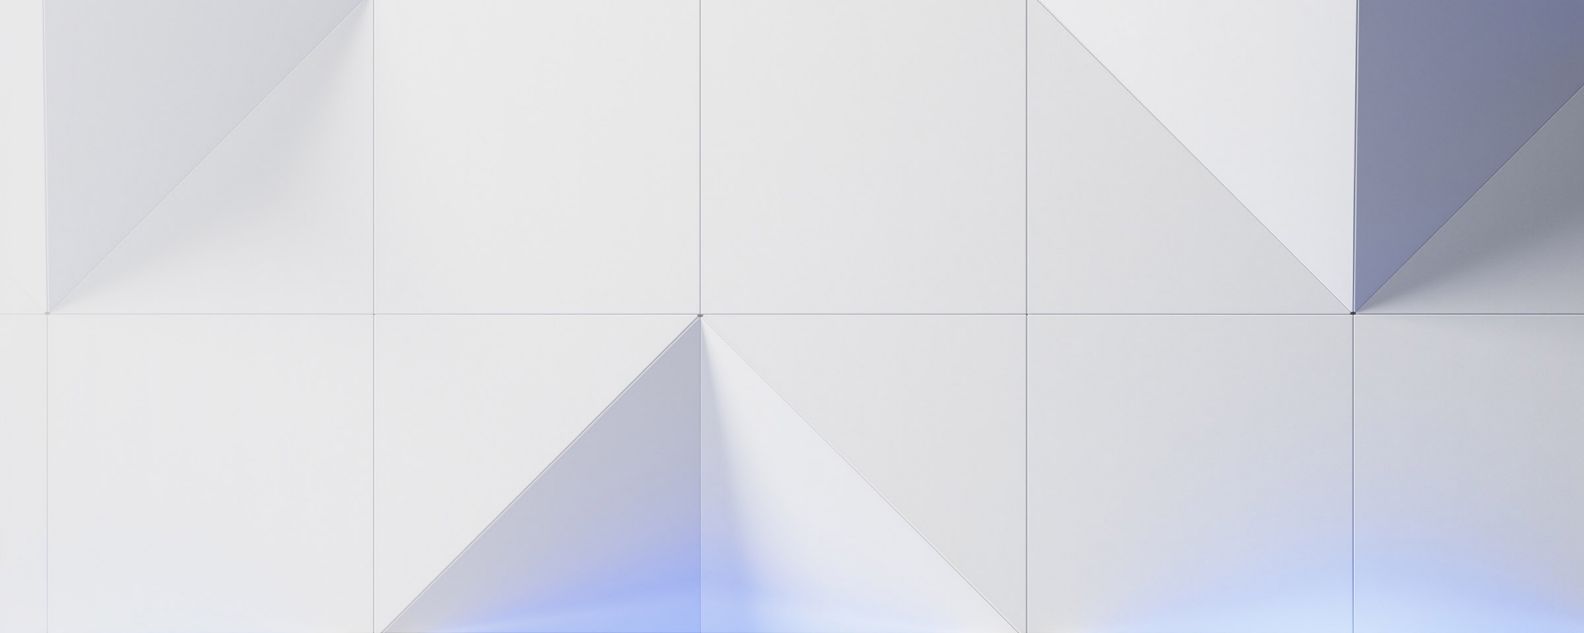 image graphique abstraite avec des triangles et des carrés